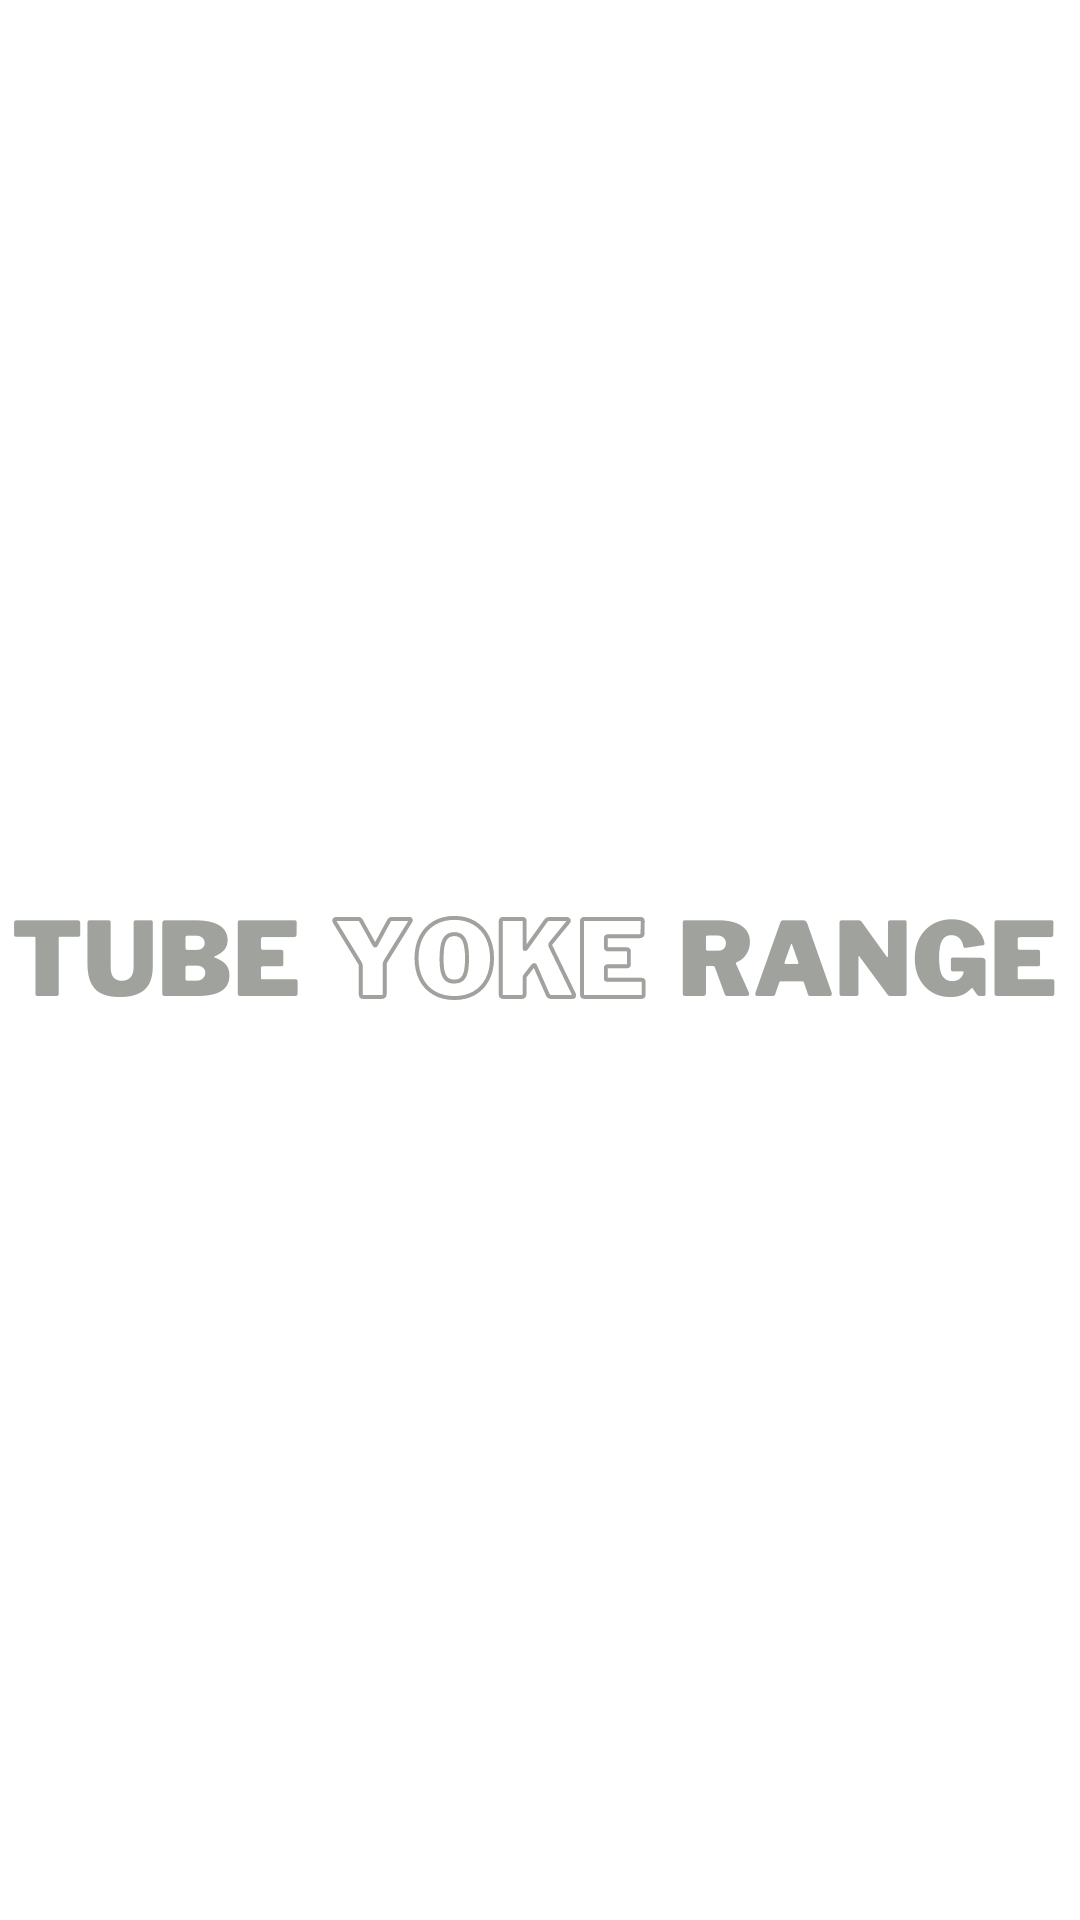 Tube Yoke Range Title